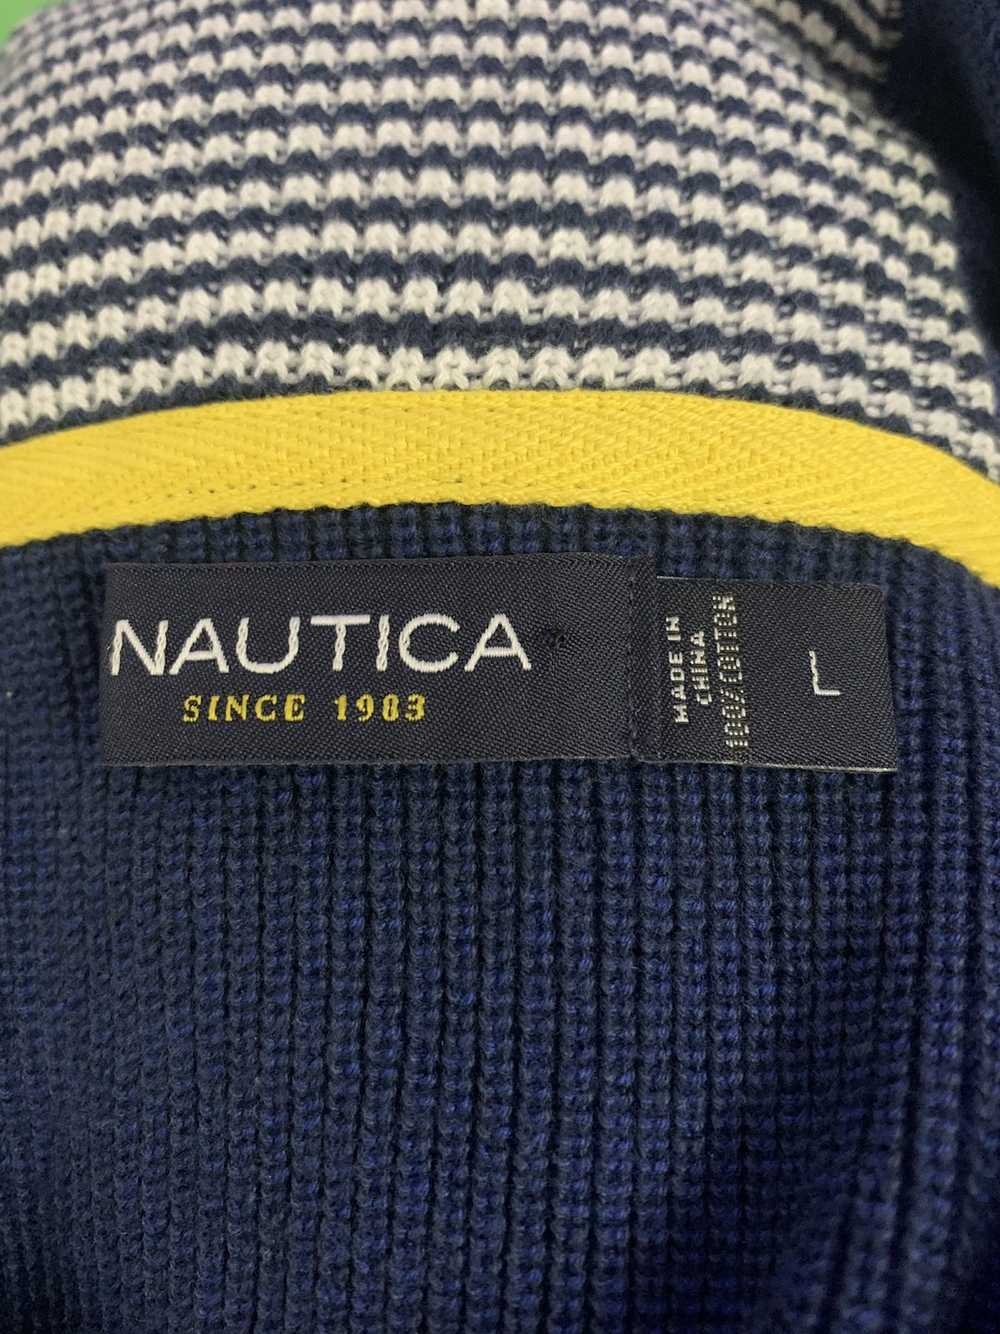 Nautica NAUTICA Heavy Cotton Full Zip Sweater - image 3